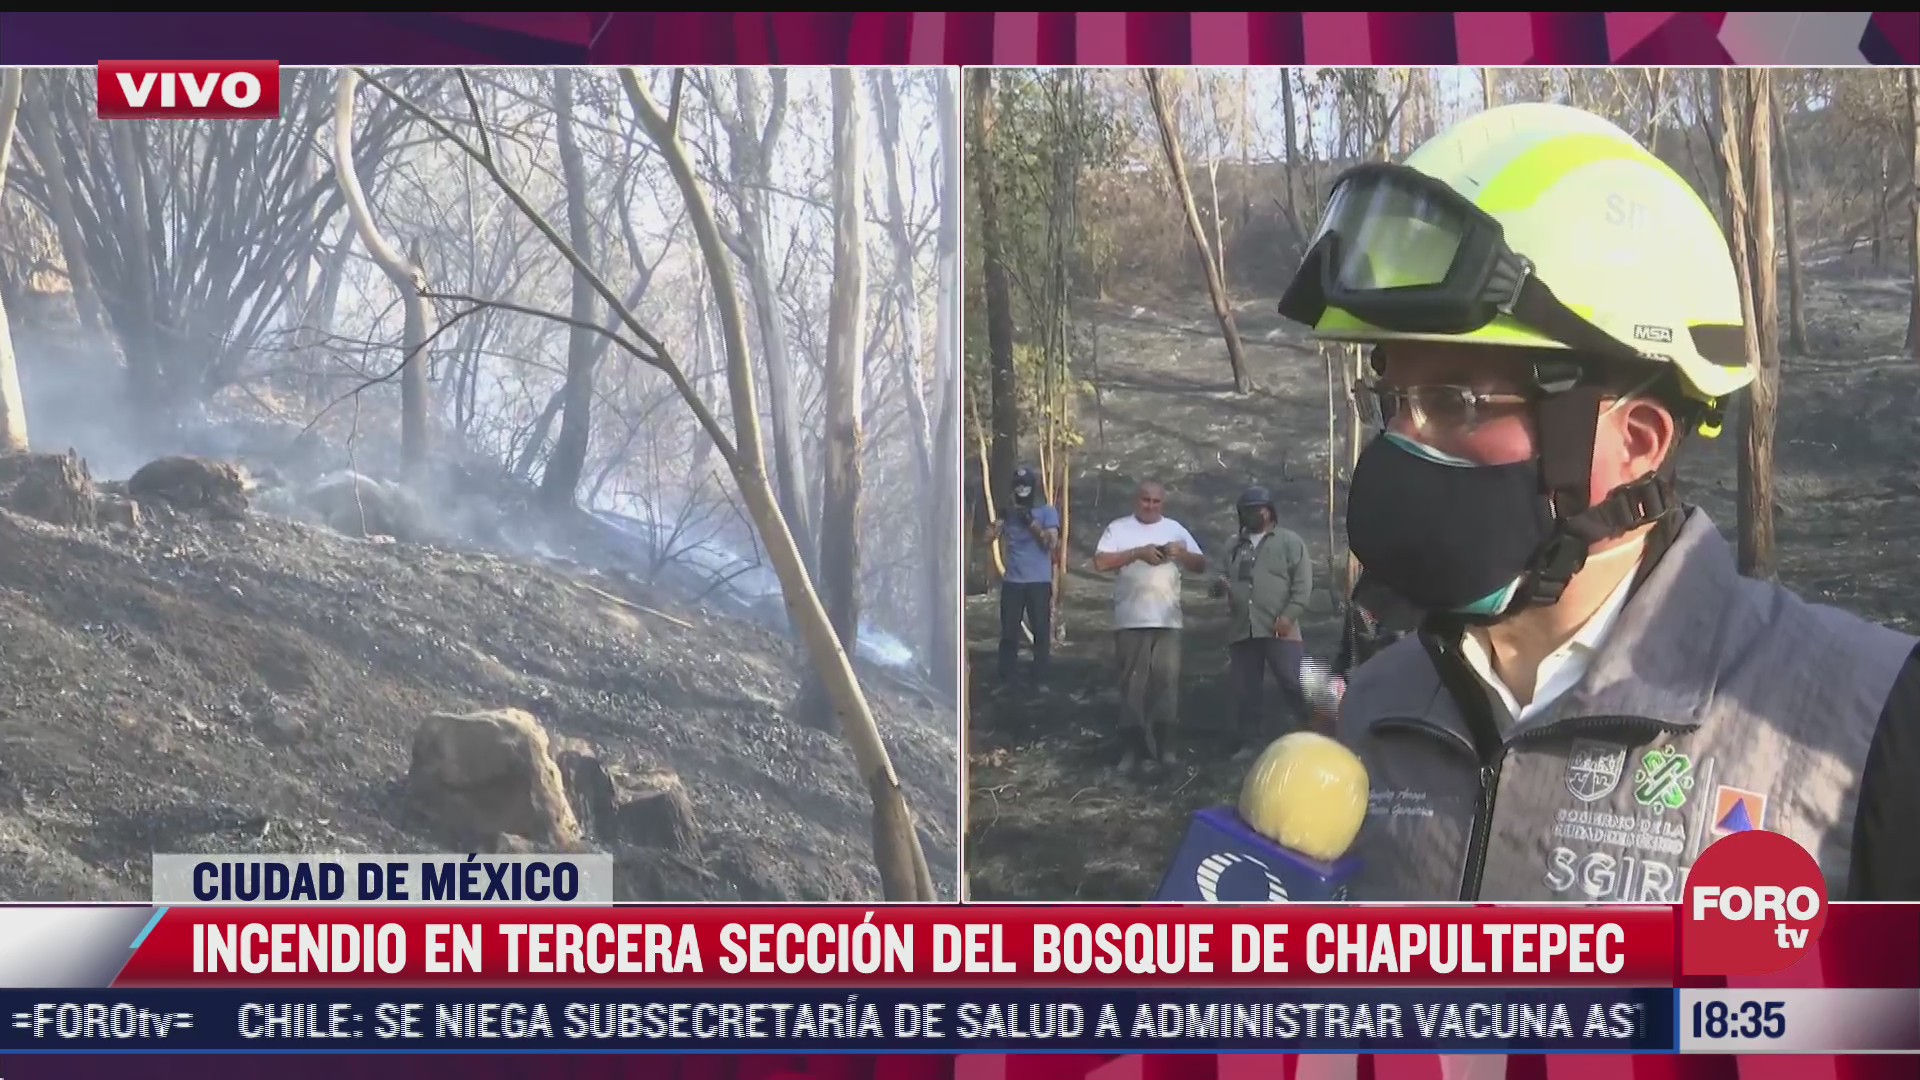 pronta accion permitio sofocar incendio en bosque de chapultepec sgirp cdmx